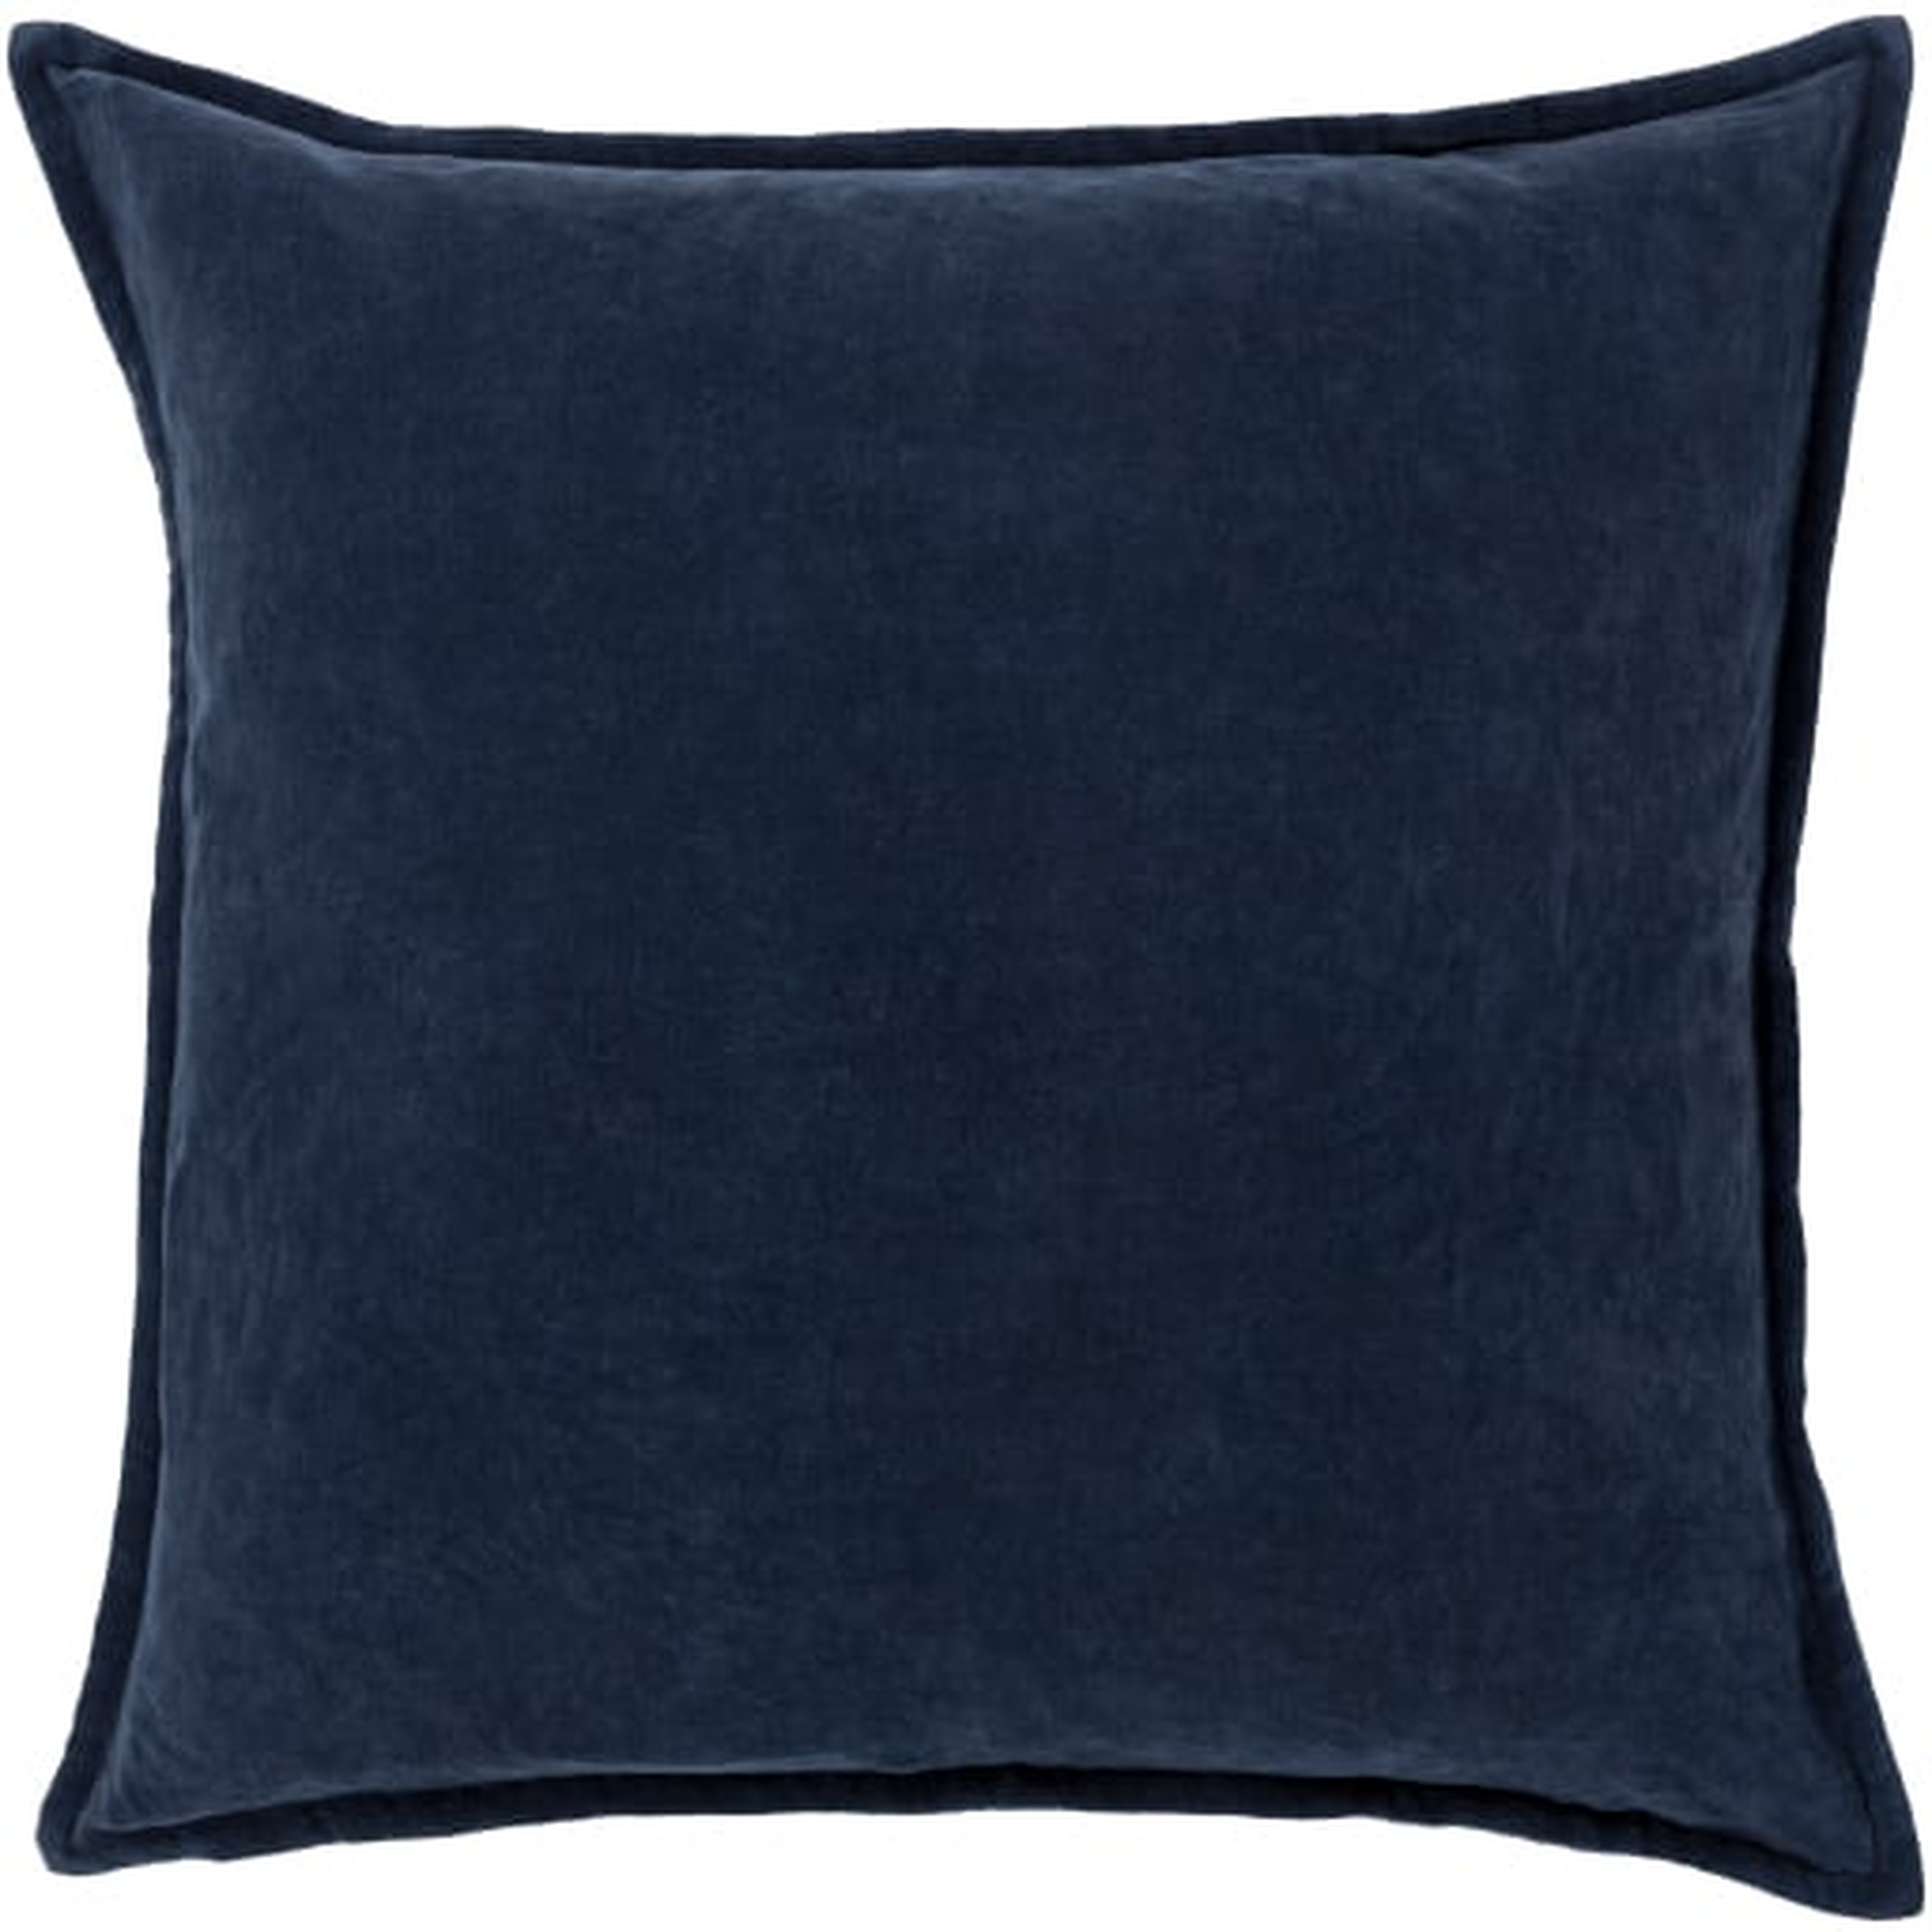 Cotton Velvet Pillow with Polyester Insert, Navy, 20'' x 20'' - Neva Home